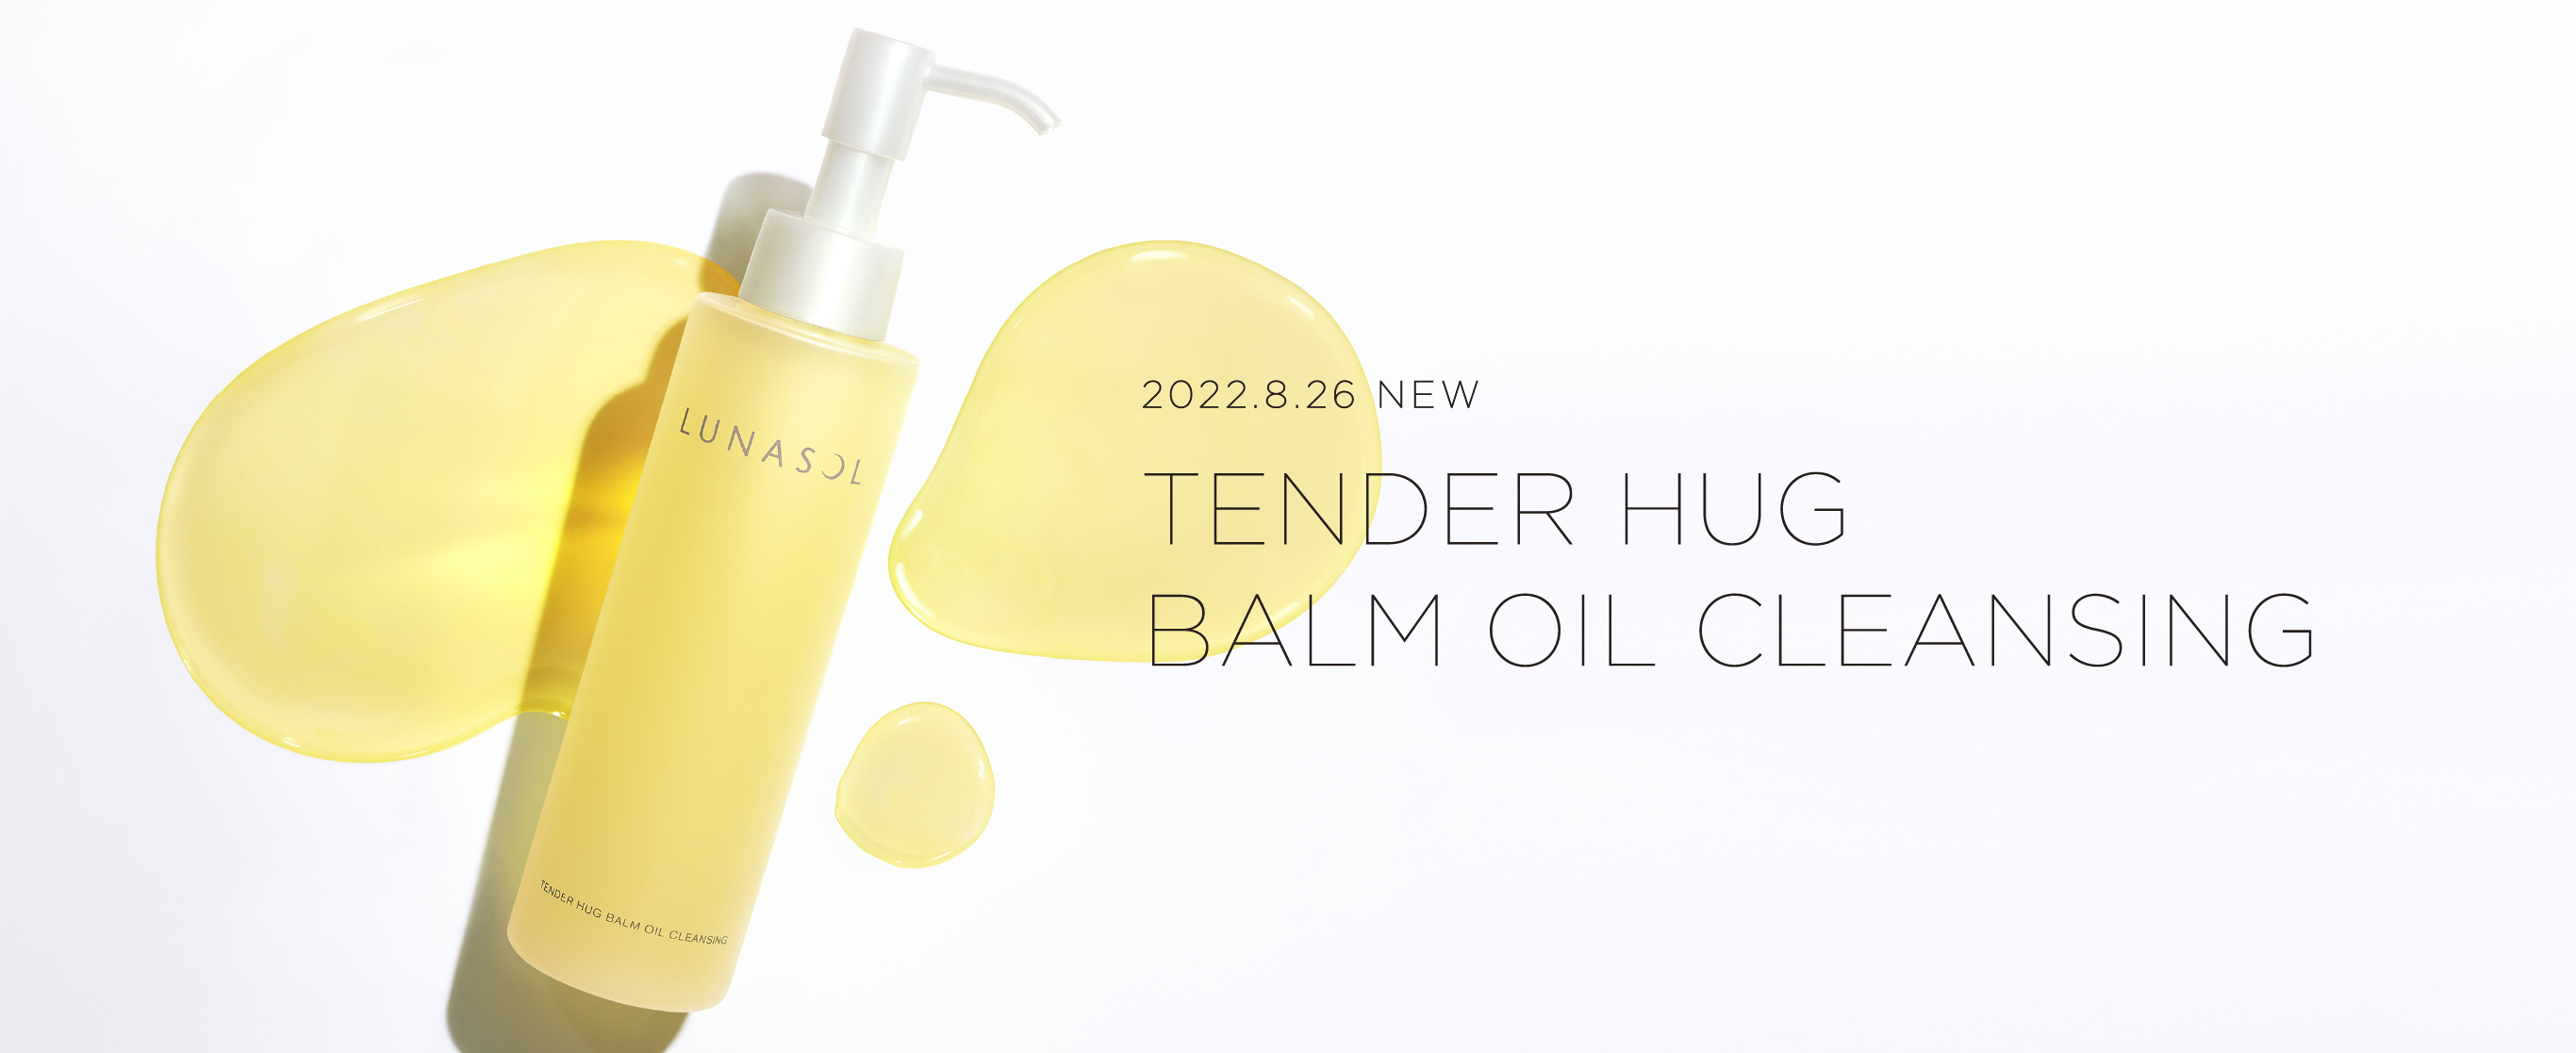 2022.8.26 NEW TENDER HUG BALM OIL CLEANSING